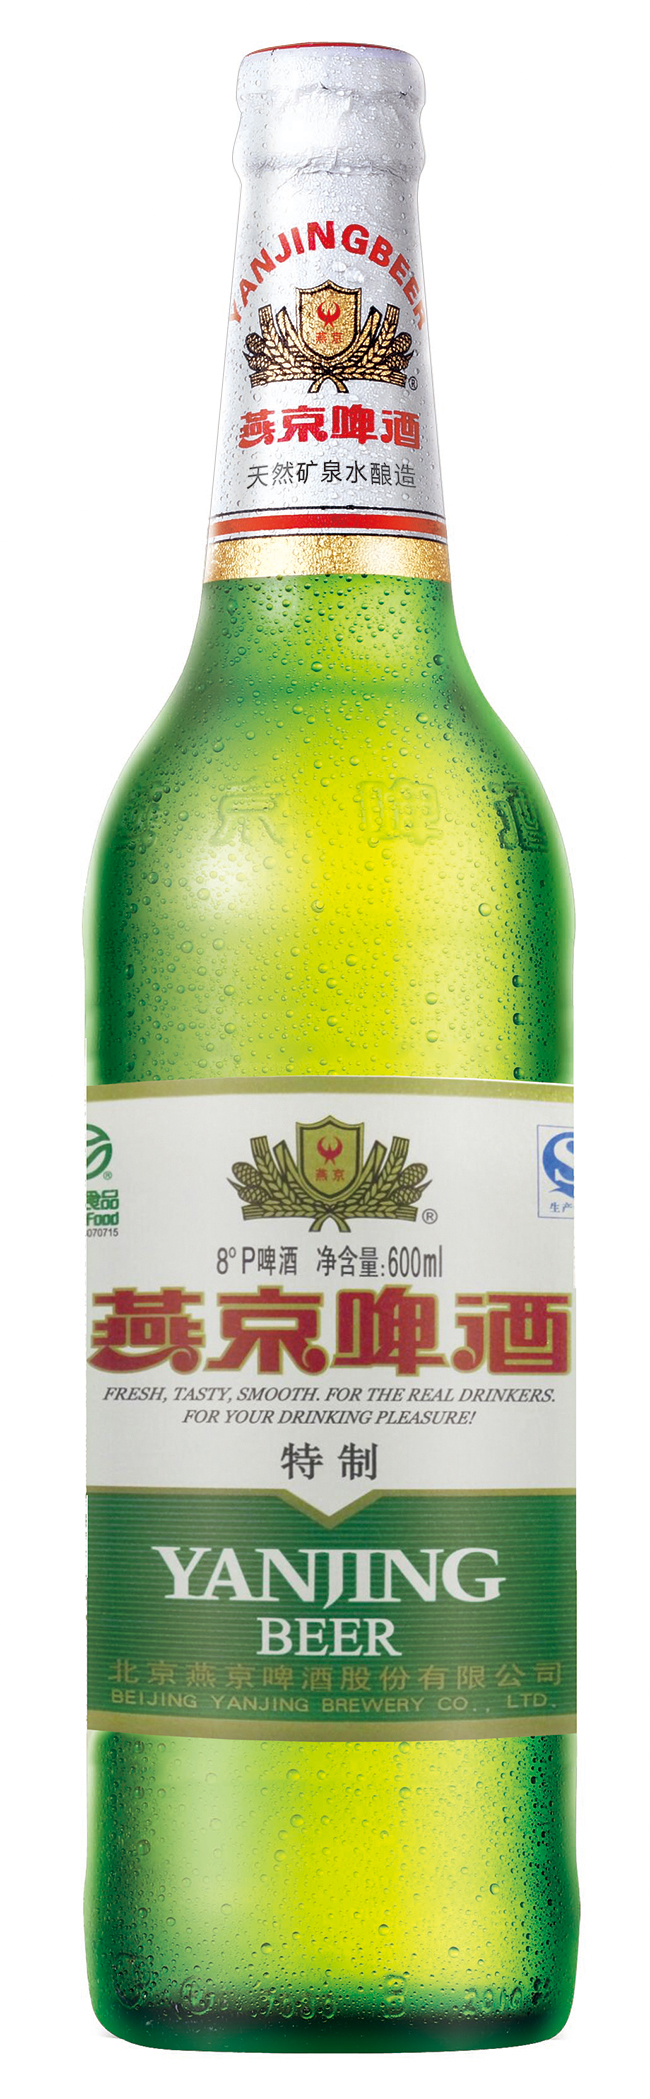 cn304139784s_瓶贴(8度燕京啤酒特制600ml)有效